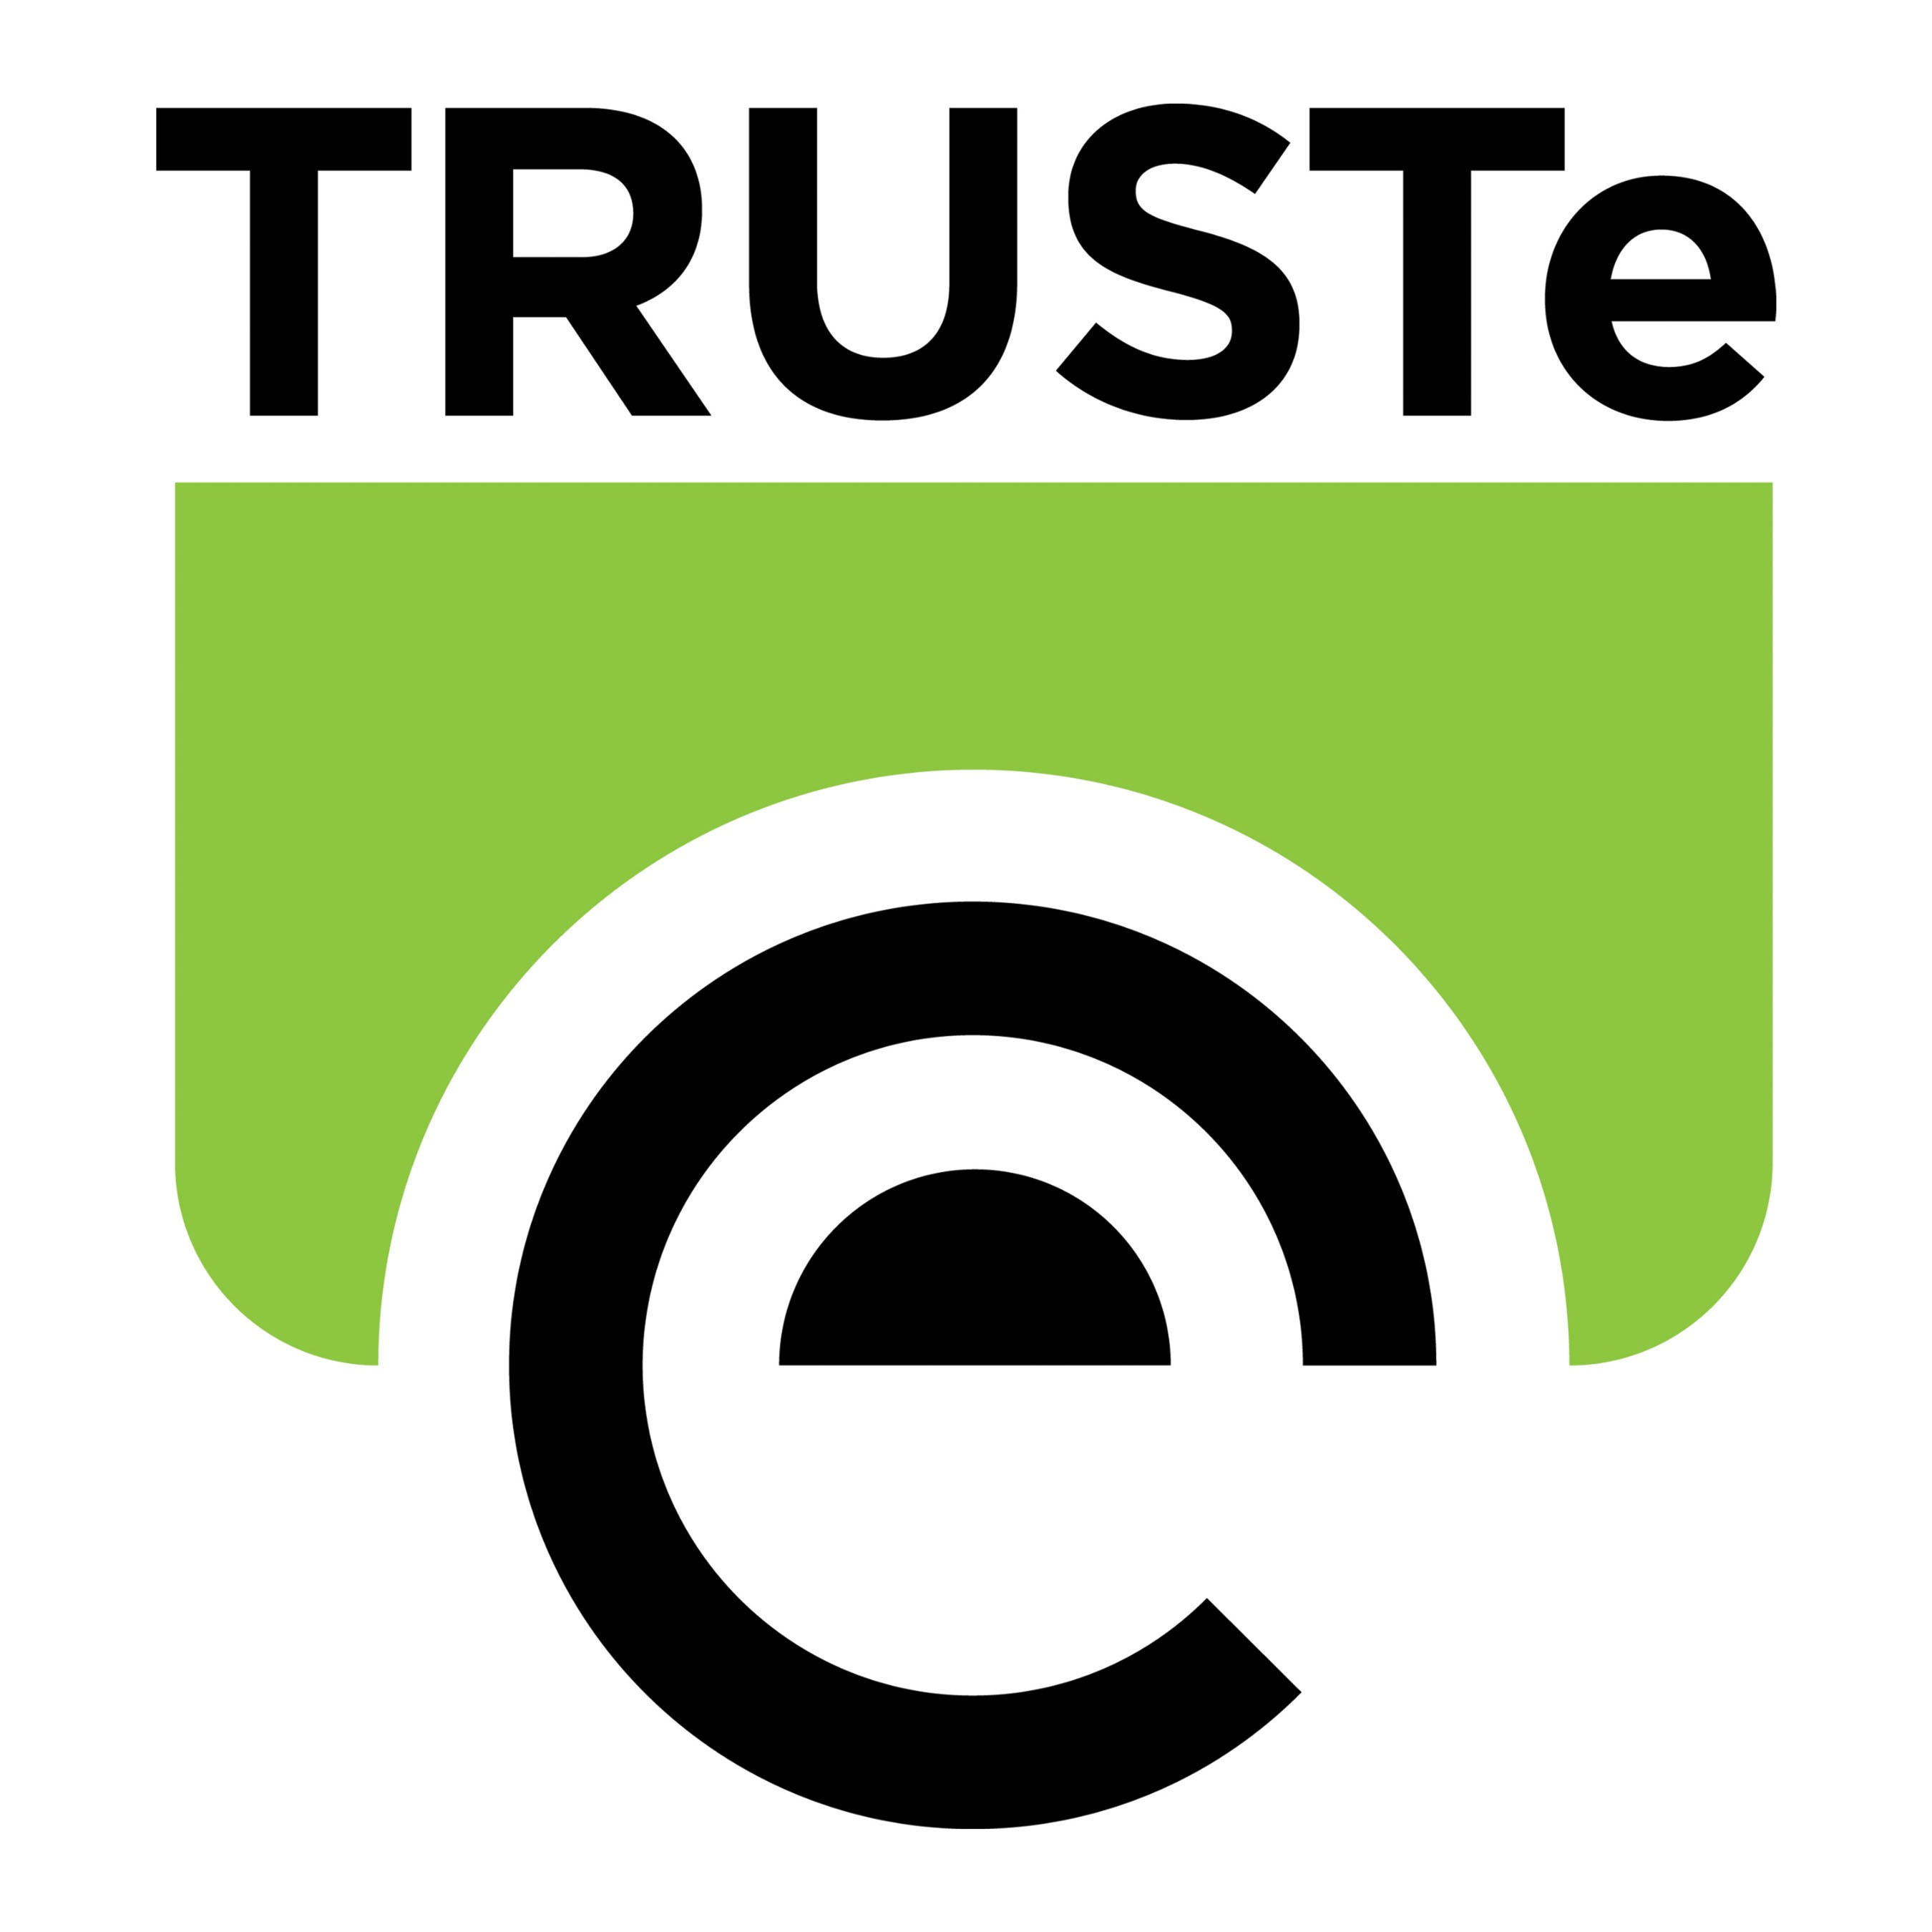 TRUSTe logo. (PRNewsFoto/TRUSTe)